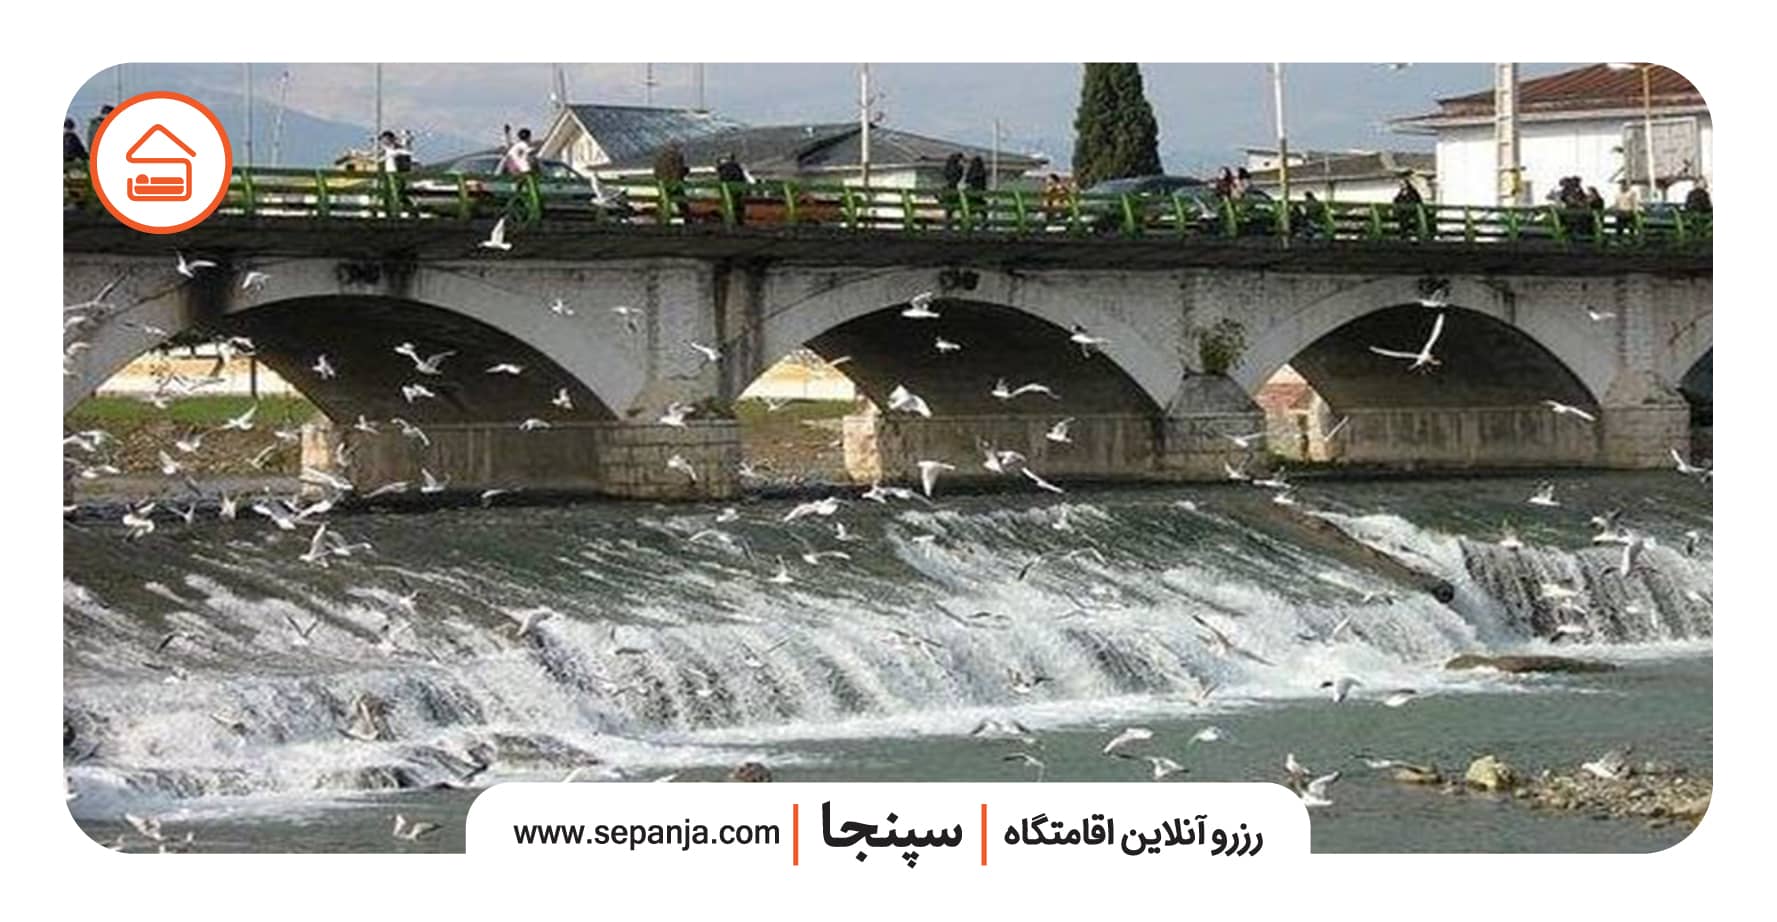  پل چشمه کیله تنکابن در استان مازندران